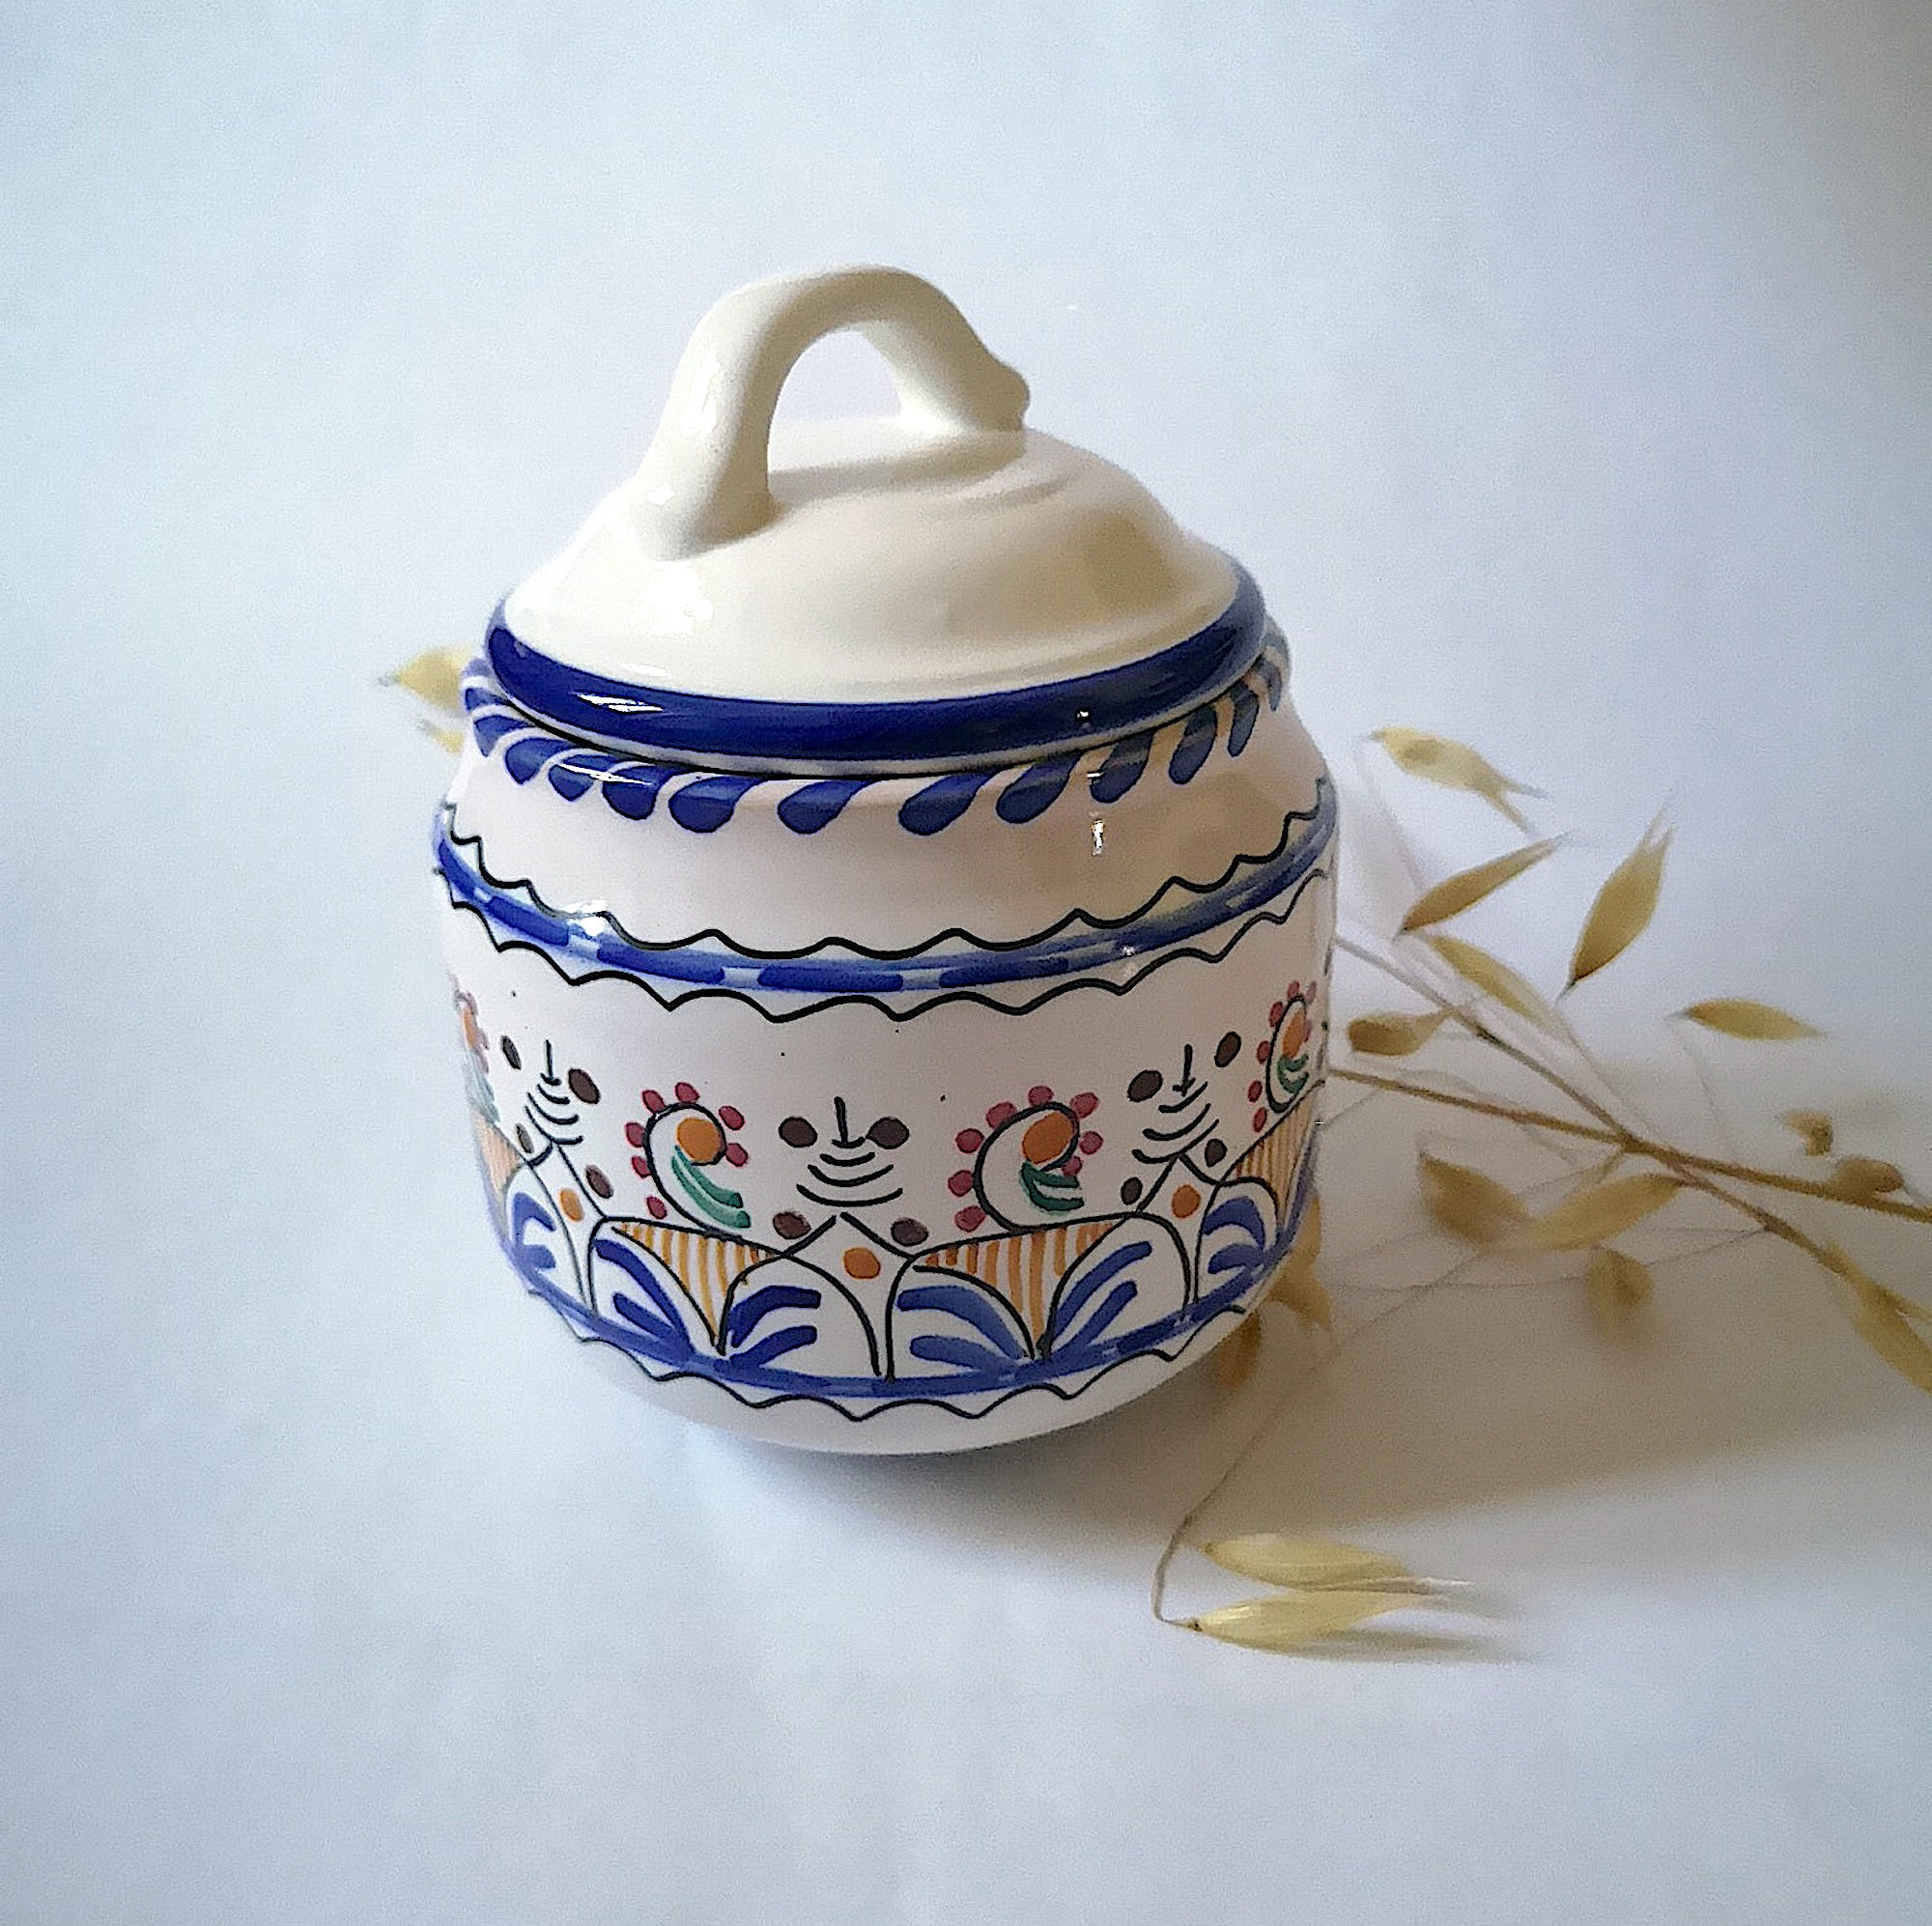 Vintage Porcelaine Manises Céramique Espagne Faïence Fait Main Poterie Peint à La Blanc Bleu Motif S